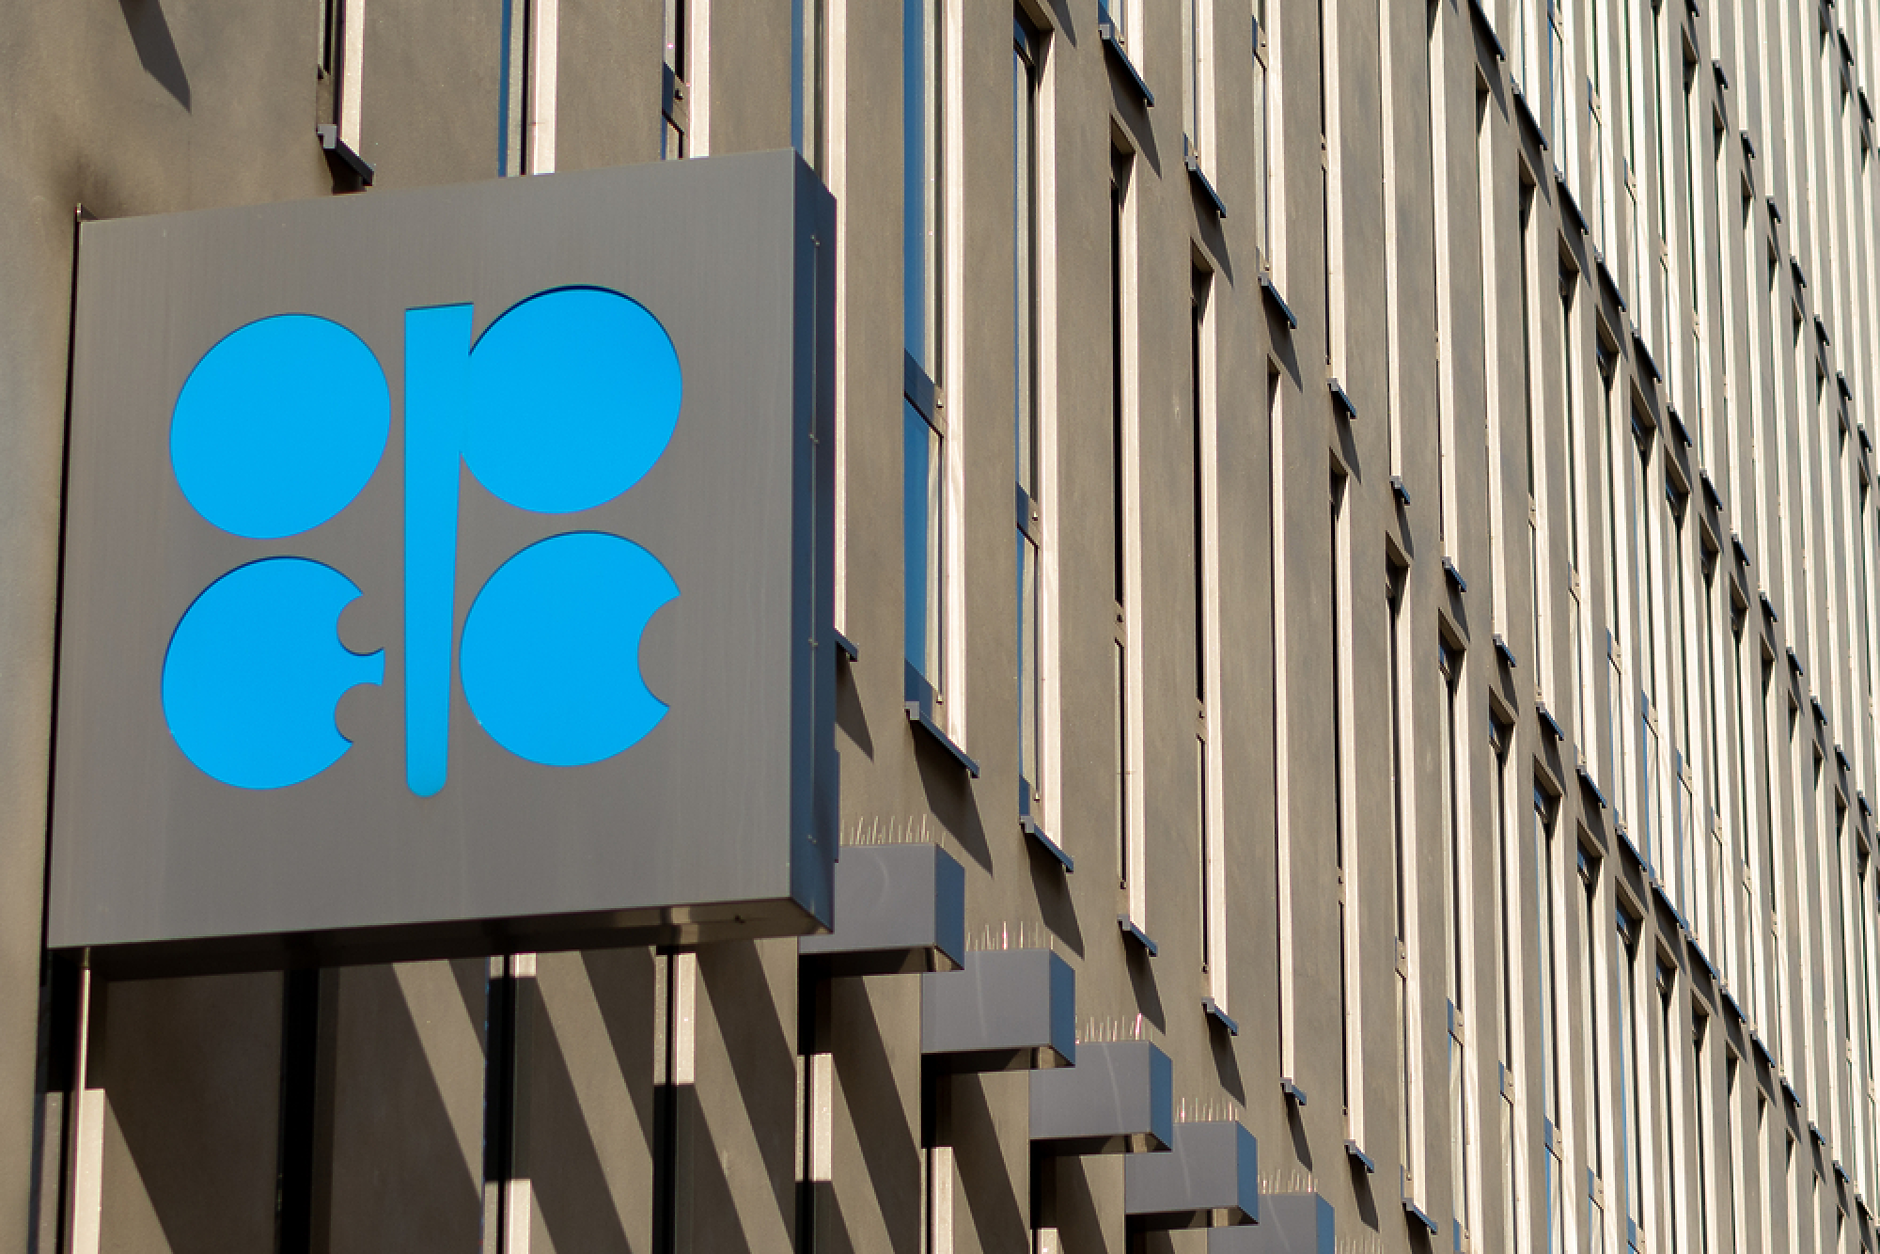 Петролът на ОПЕК се задържа около нивото от 83 долара за барел